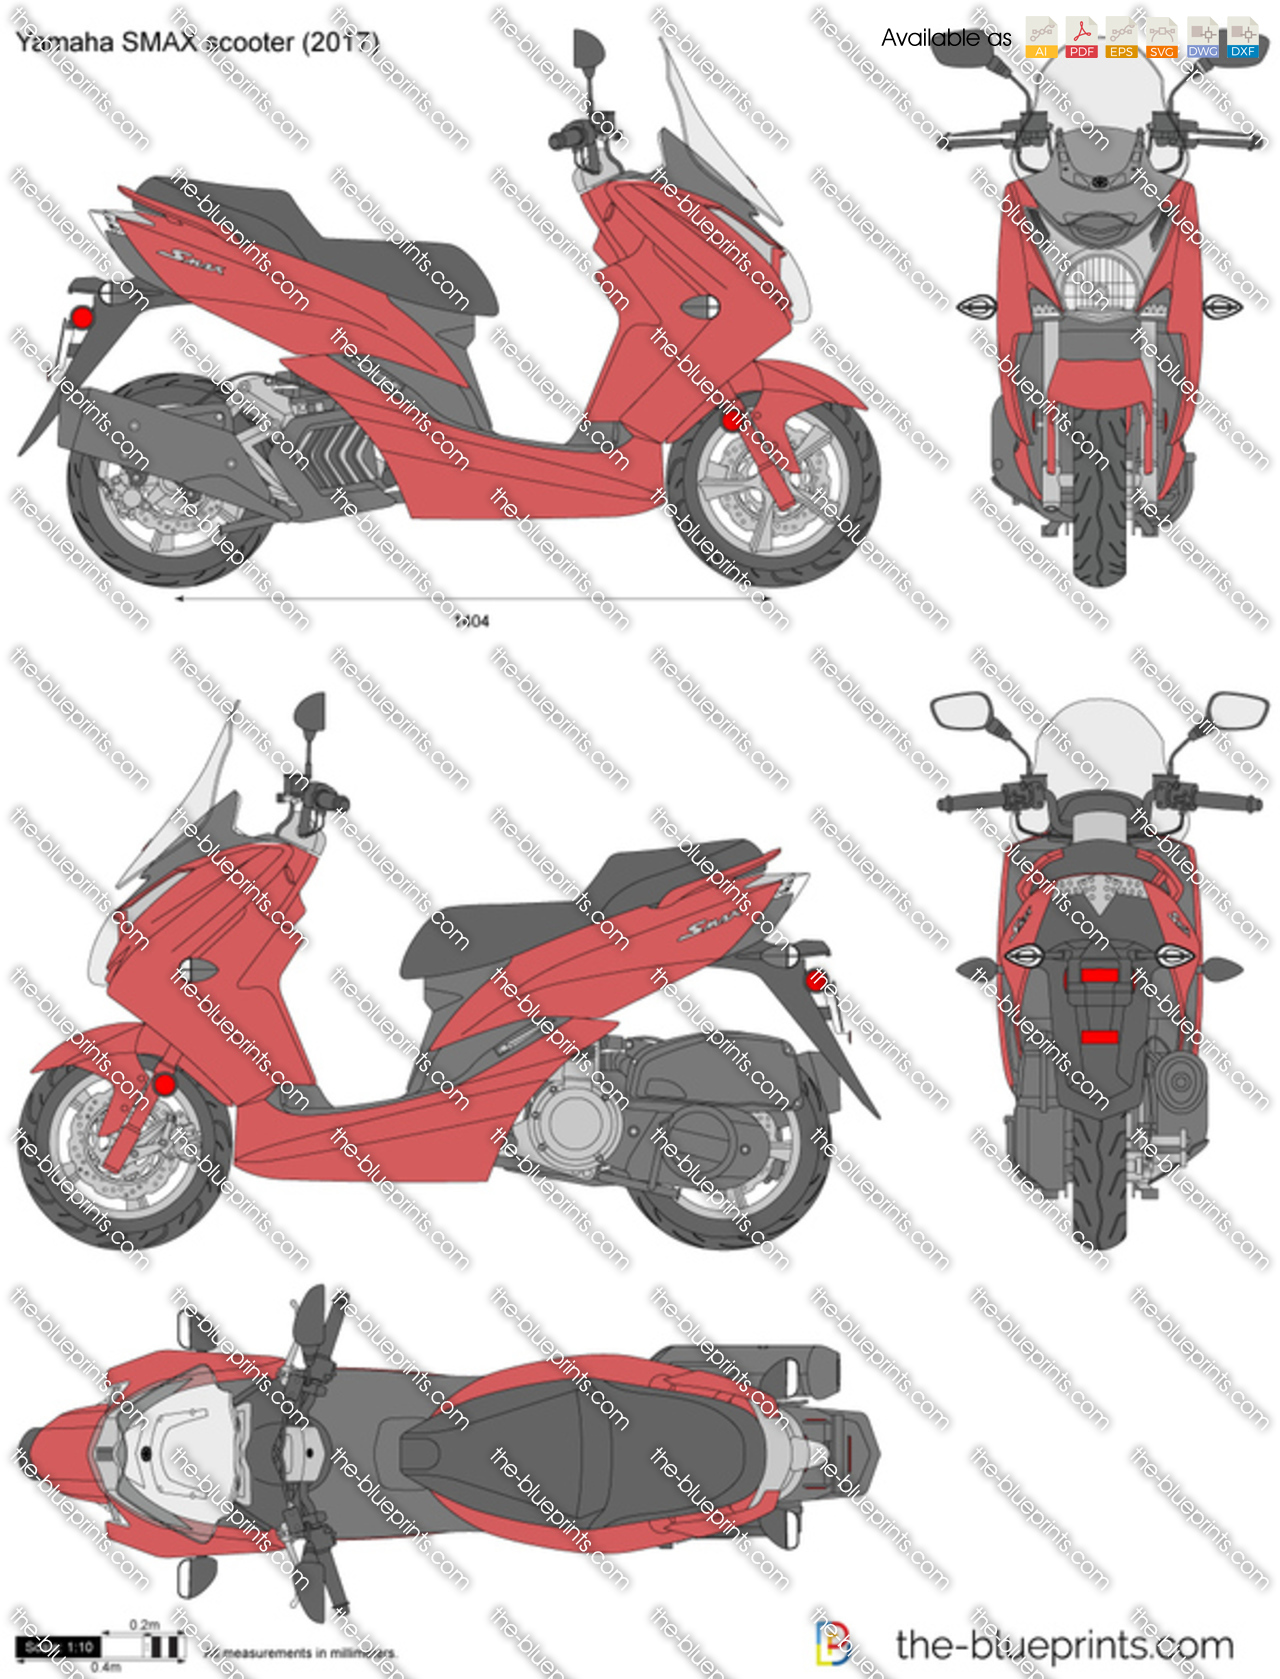 Yamaha SMAX scooter